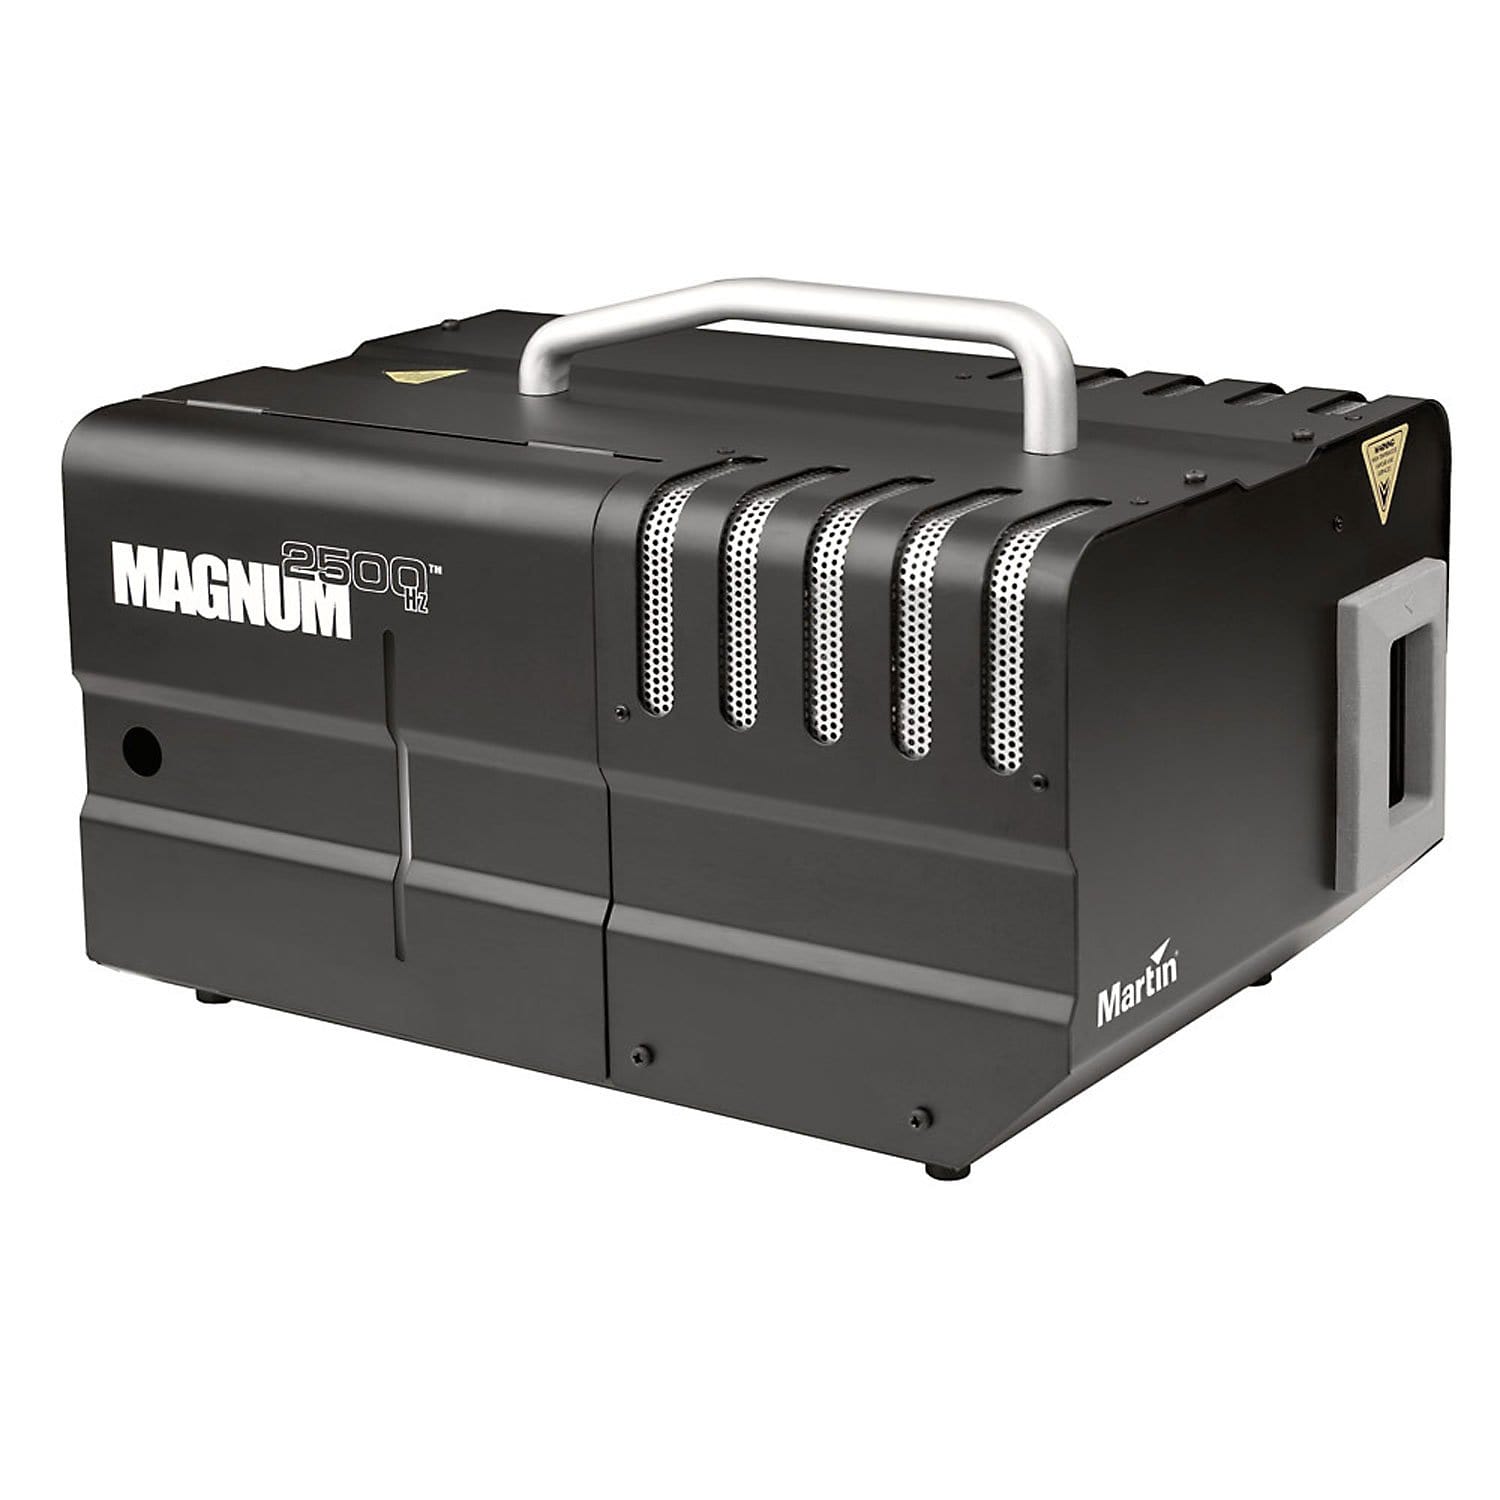 Martin Magnum 2500 Hz DMX Haze Machine - ProSound and Stage Lighting